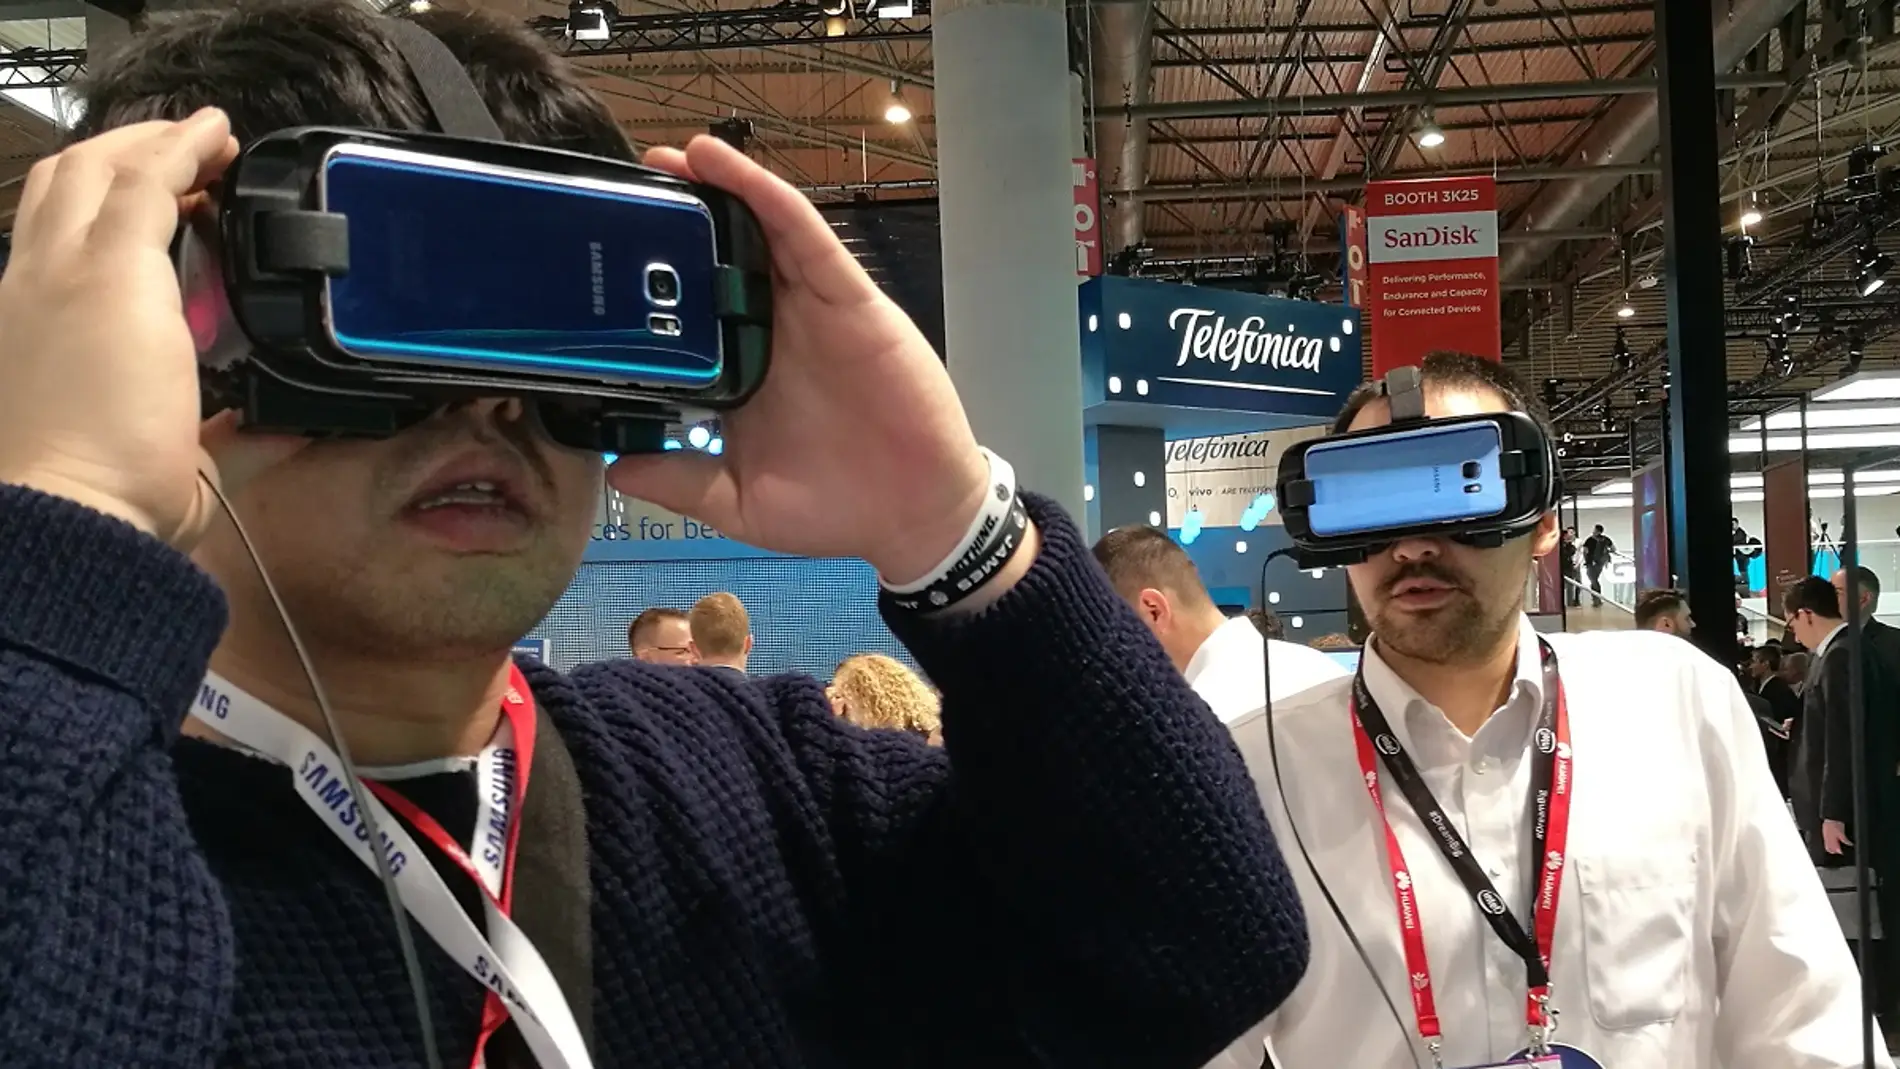 Realidad virtual en el MWC 2017